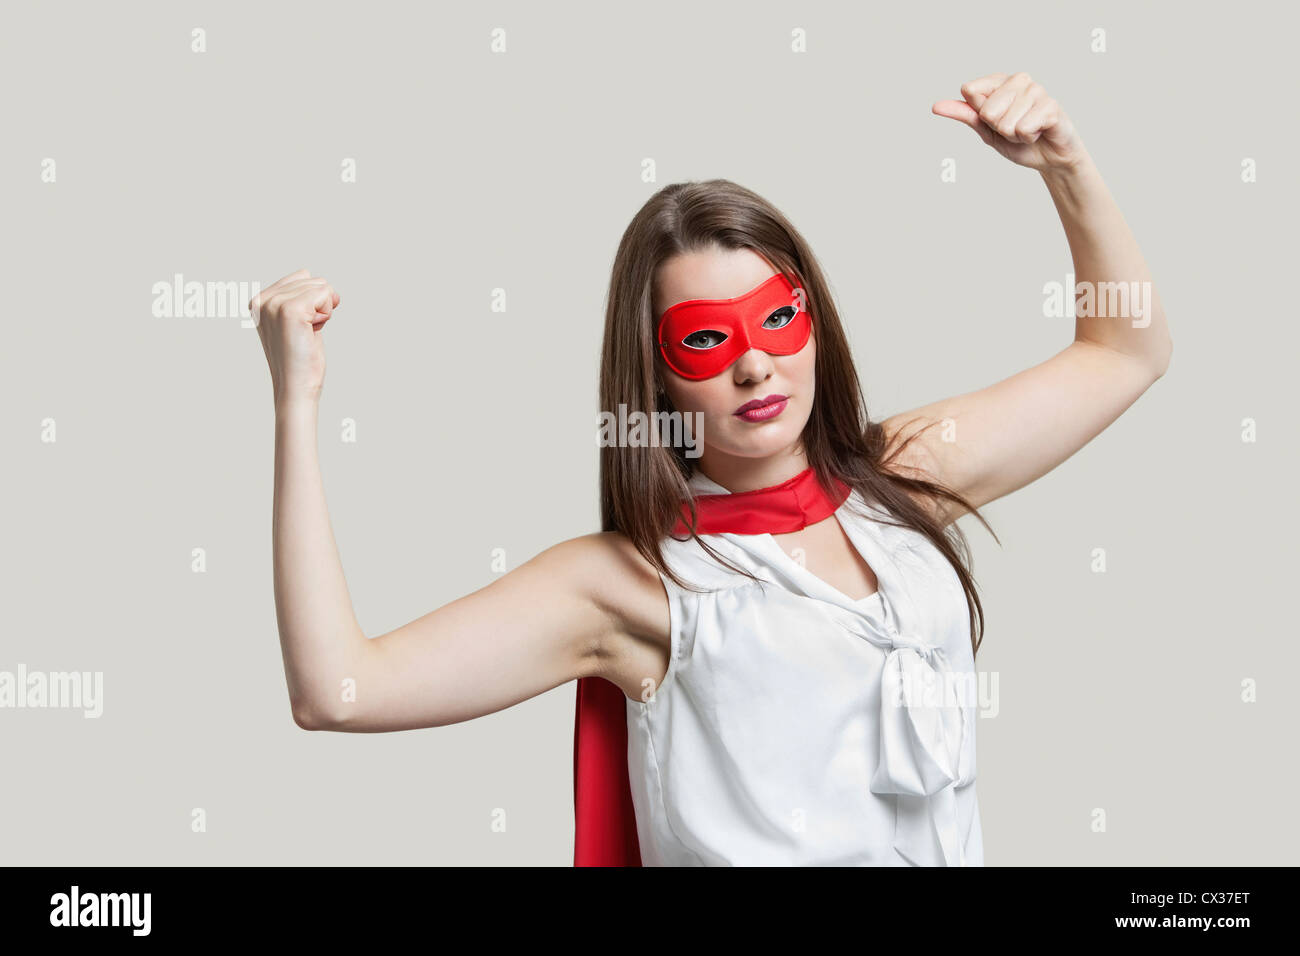 Ritratto di una giovane donna in super hero costume i muscoli di flessione su sfondo grigio Foto Stock